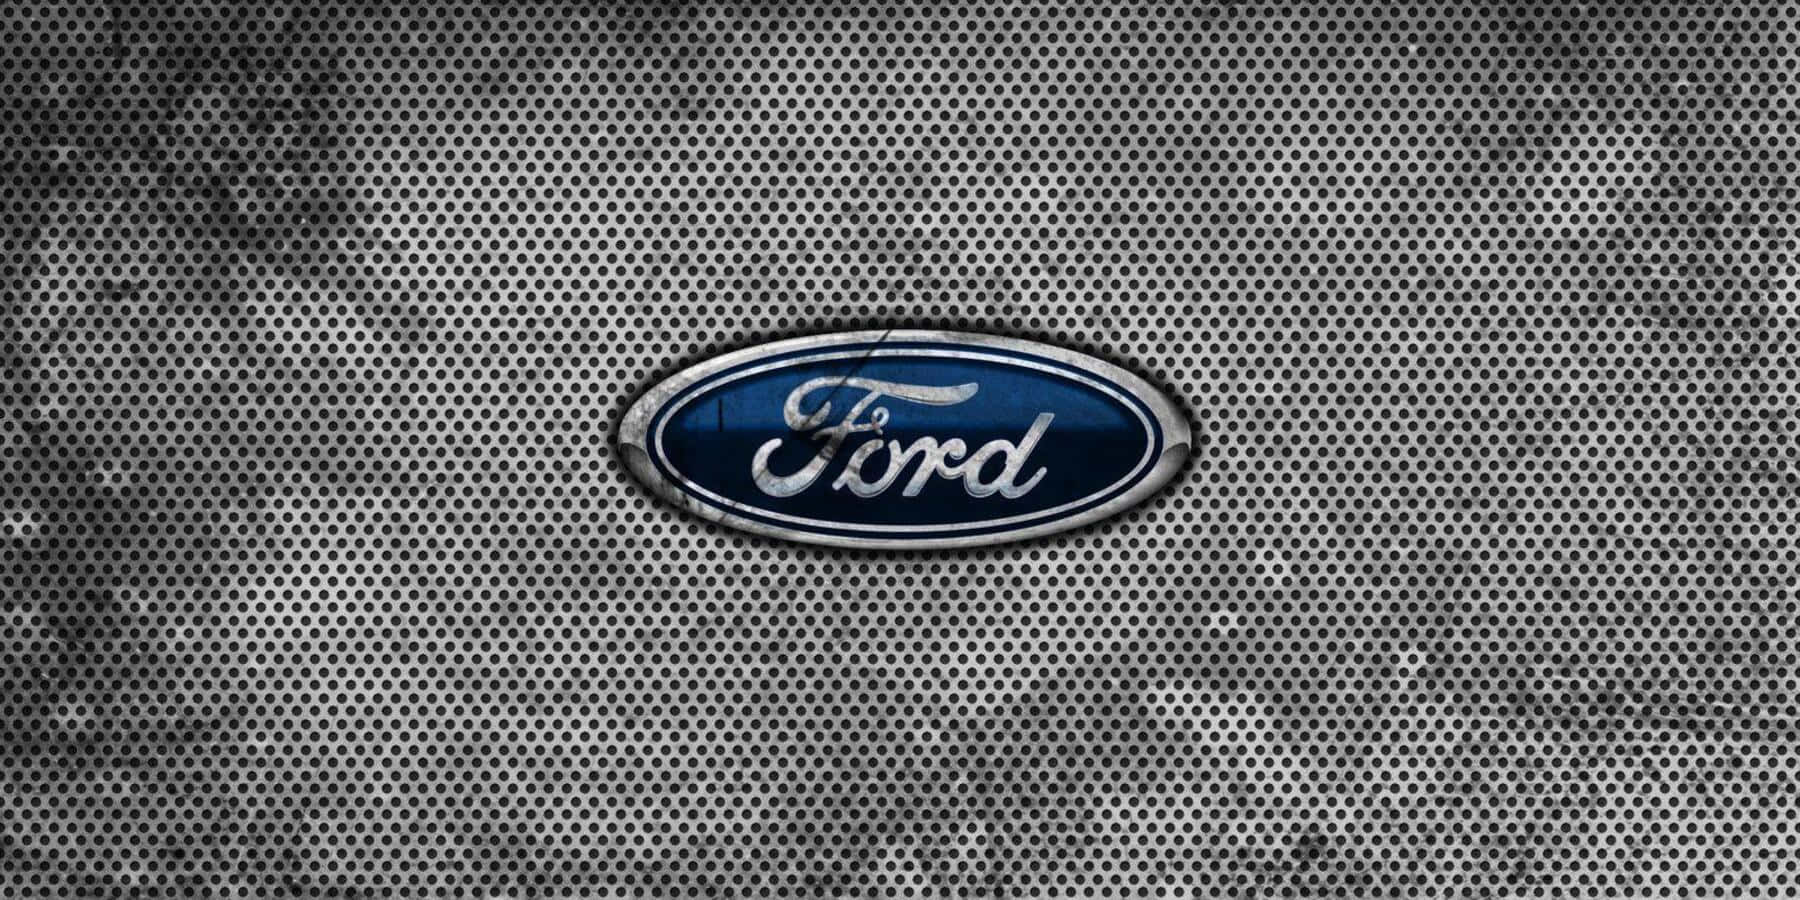 Логотип на заставку магнитолы. Логотип Форд. Заставка Форд. Обои эмблема Форд. Ford Focus логотип.